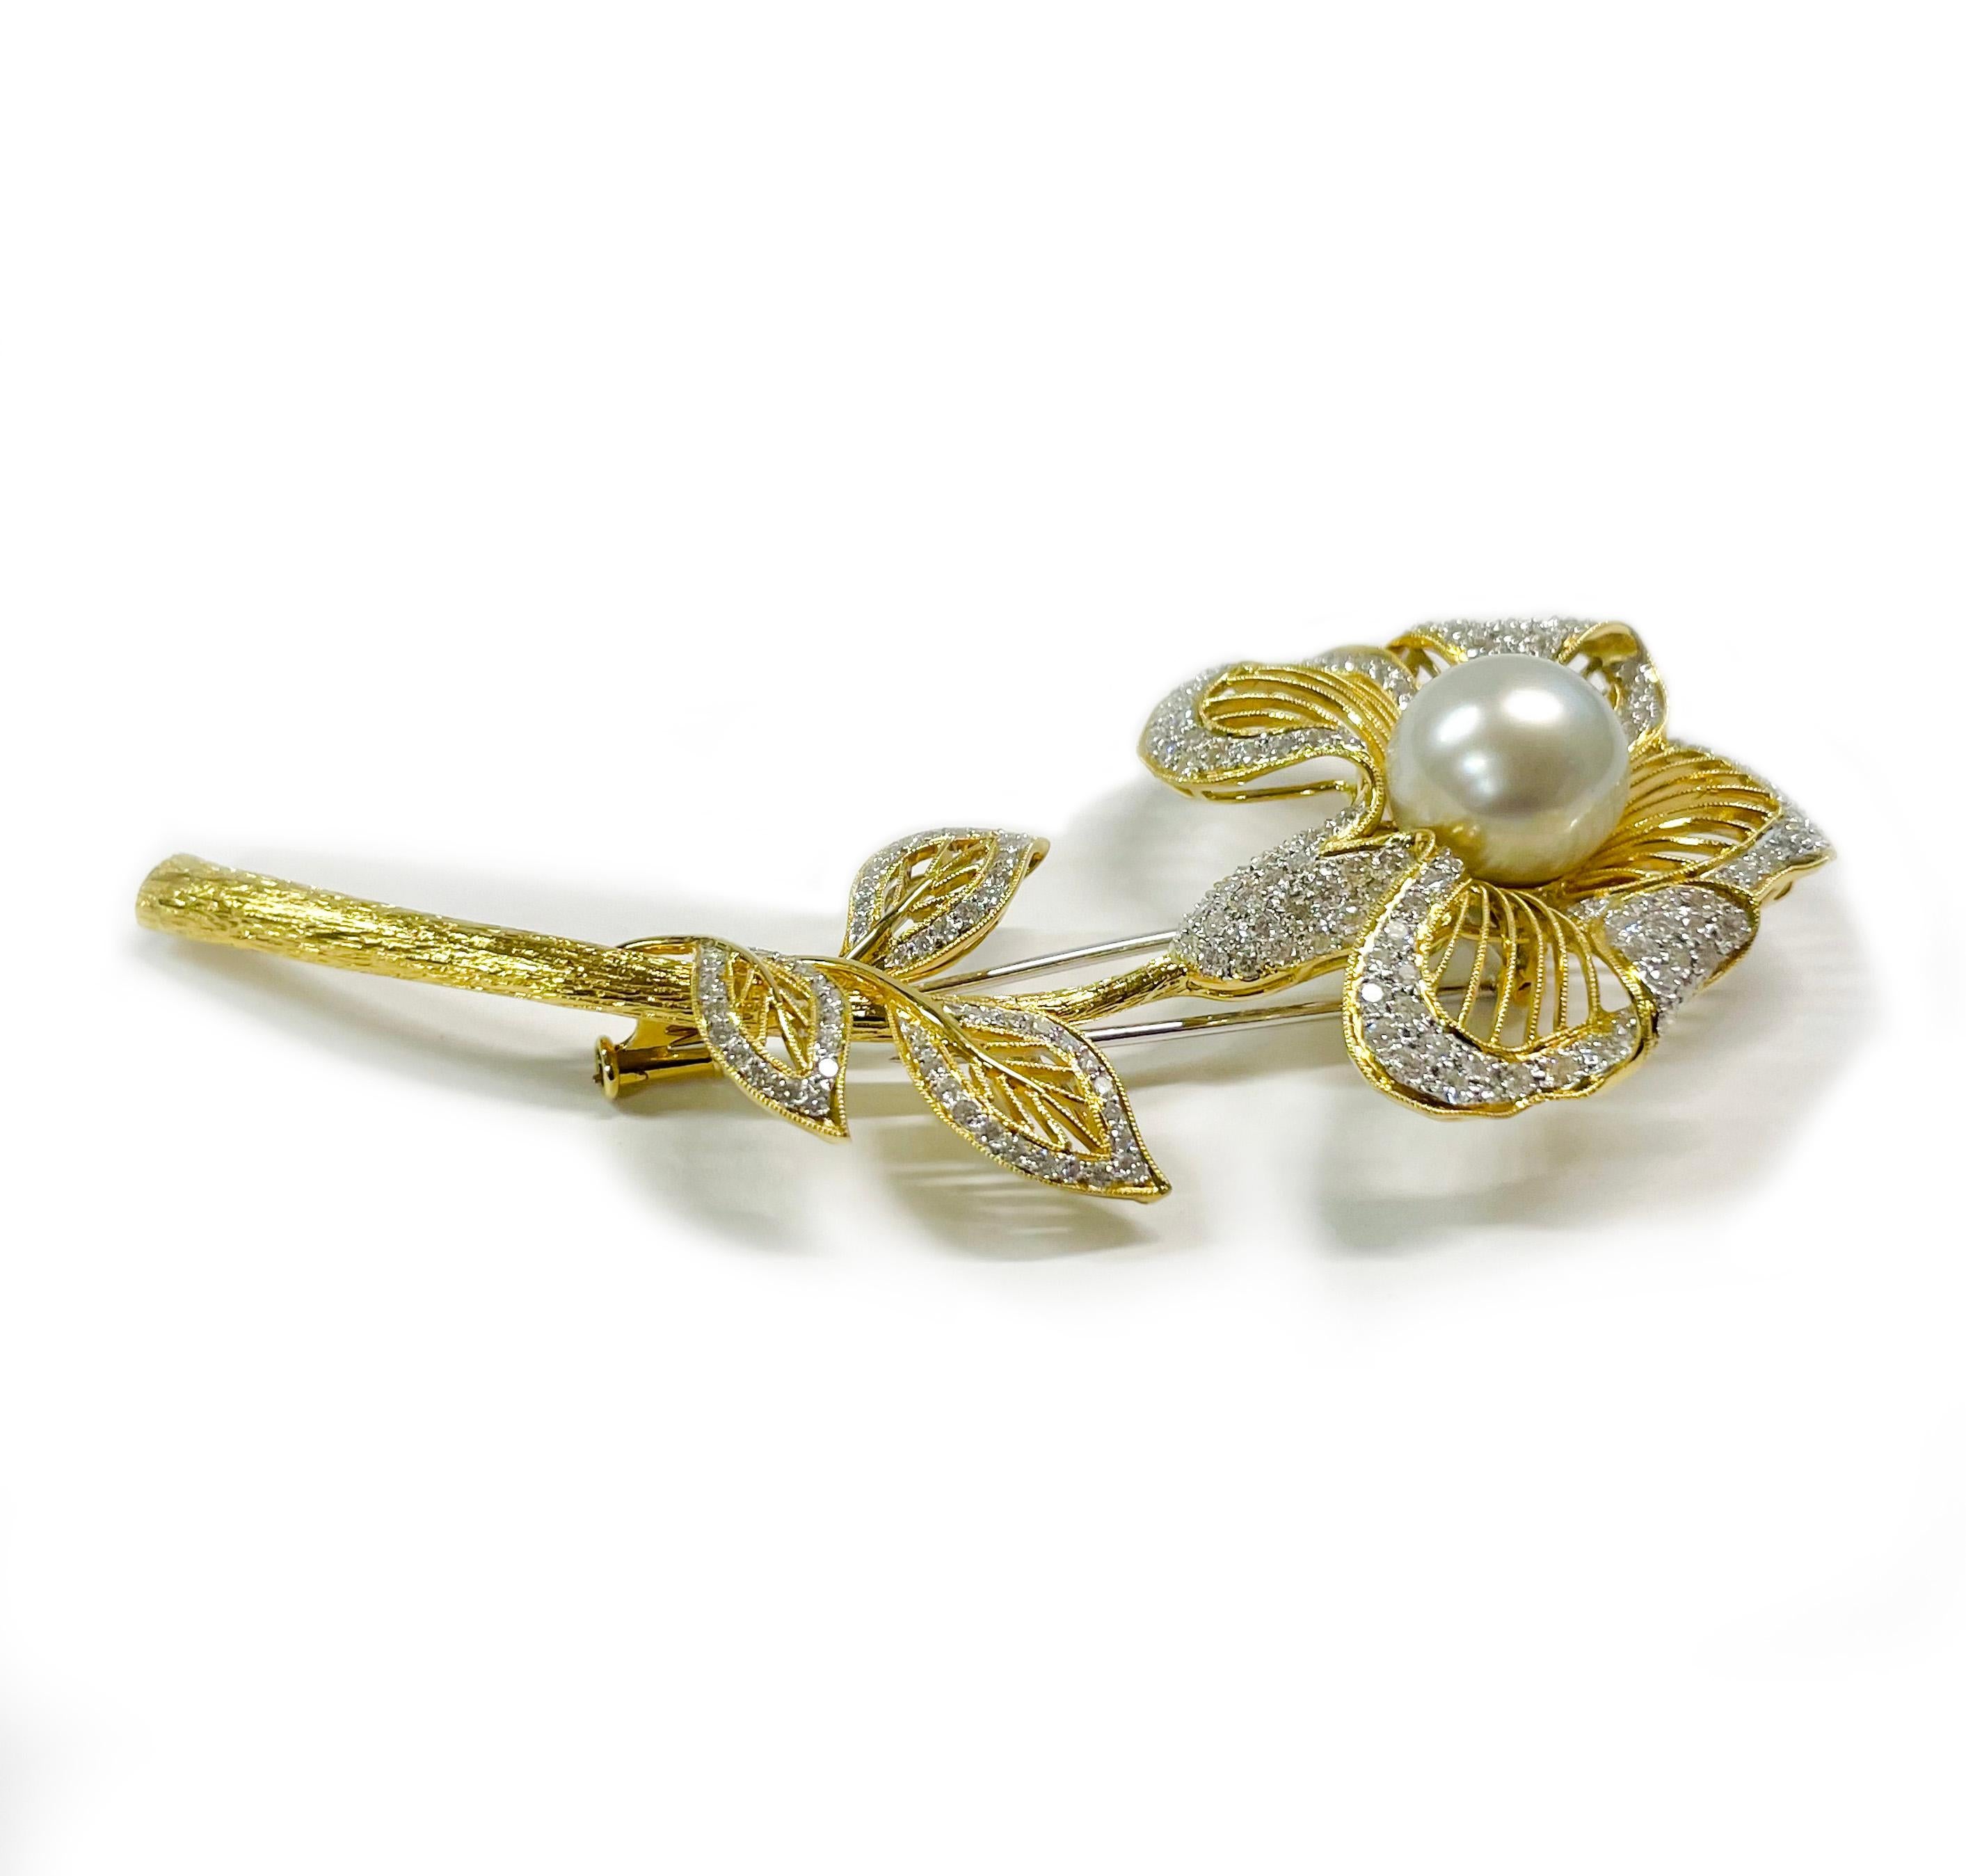 Broche fleur en or jaune et blanc 18 carats avec diamants et perles. La broche comporte une perle des mers du Sud de 11,5 mm et 171 diamants ronds de taille brillant. La perle a un bon lustre avec des nuances de rose et de bleu. Les diamants ornent